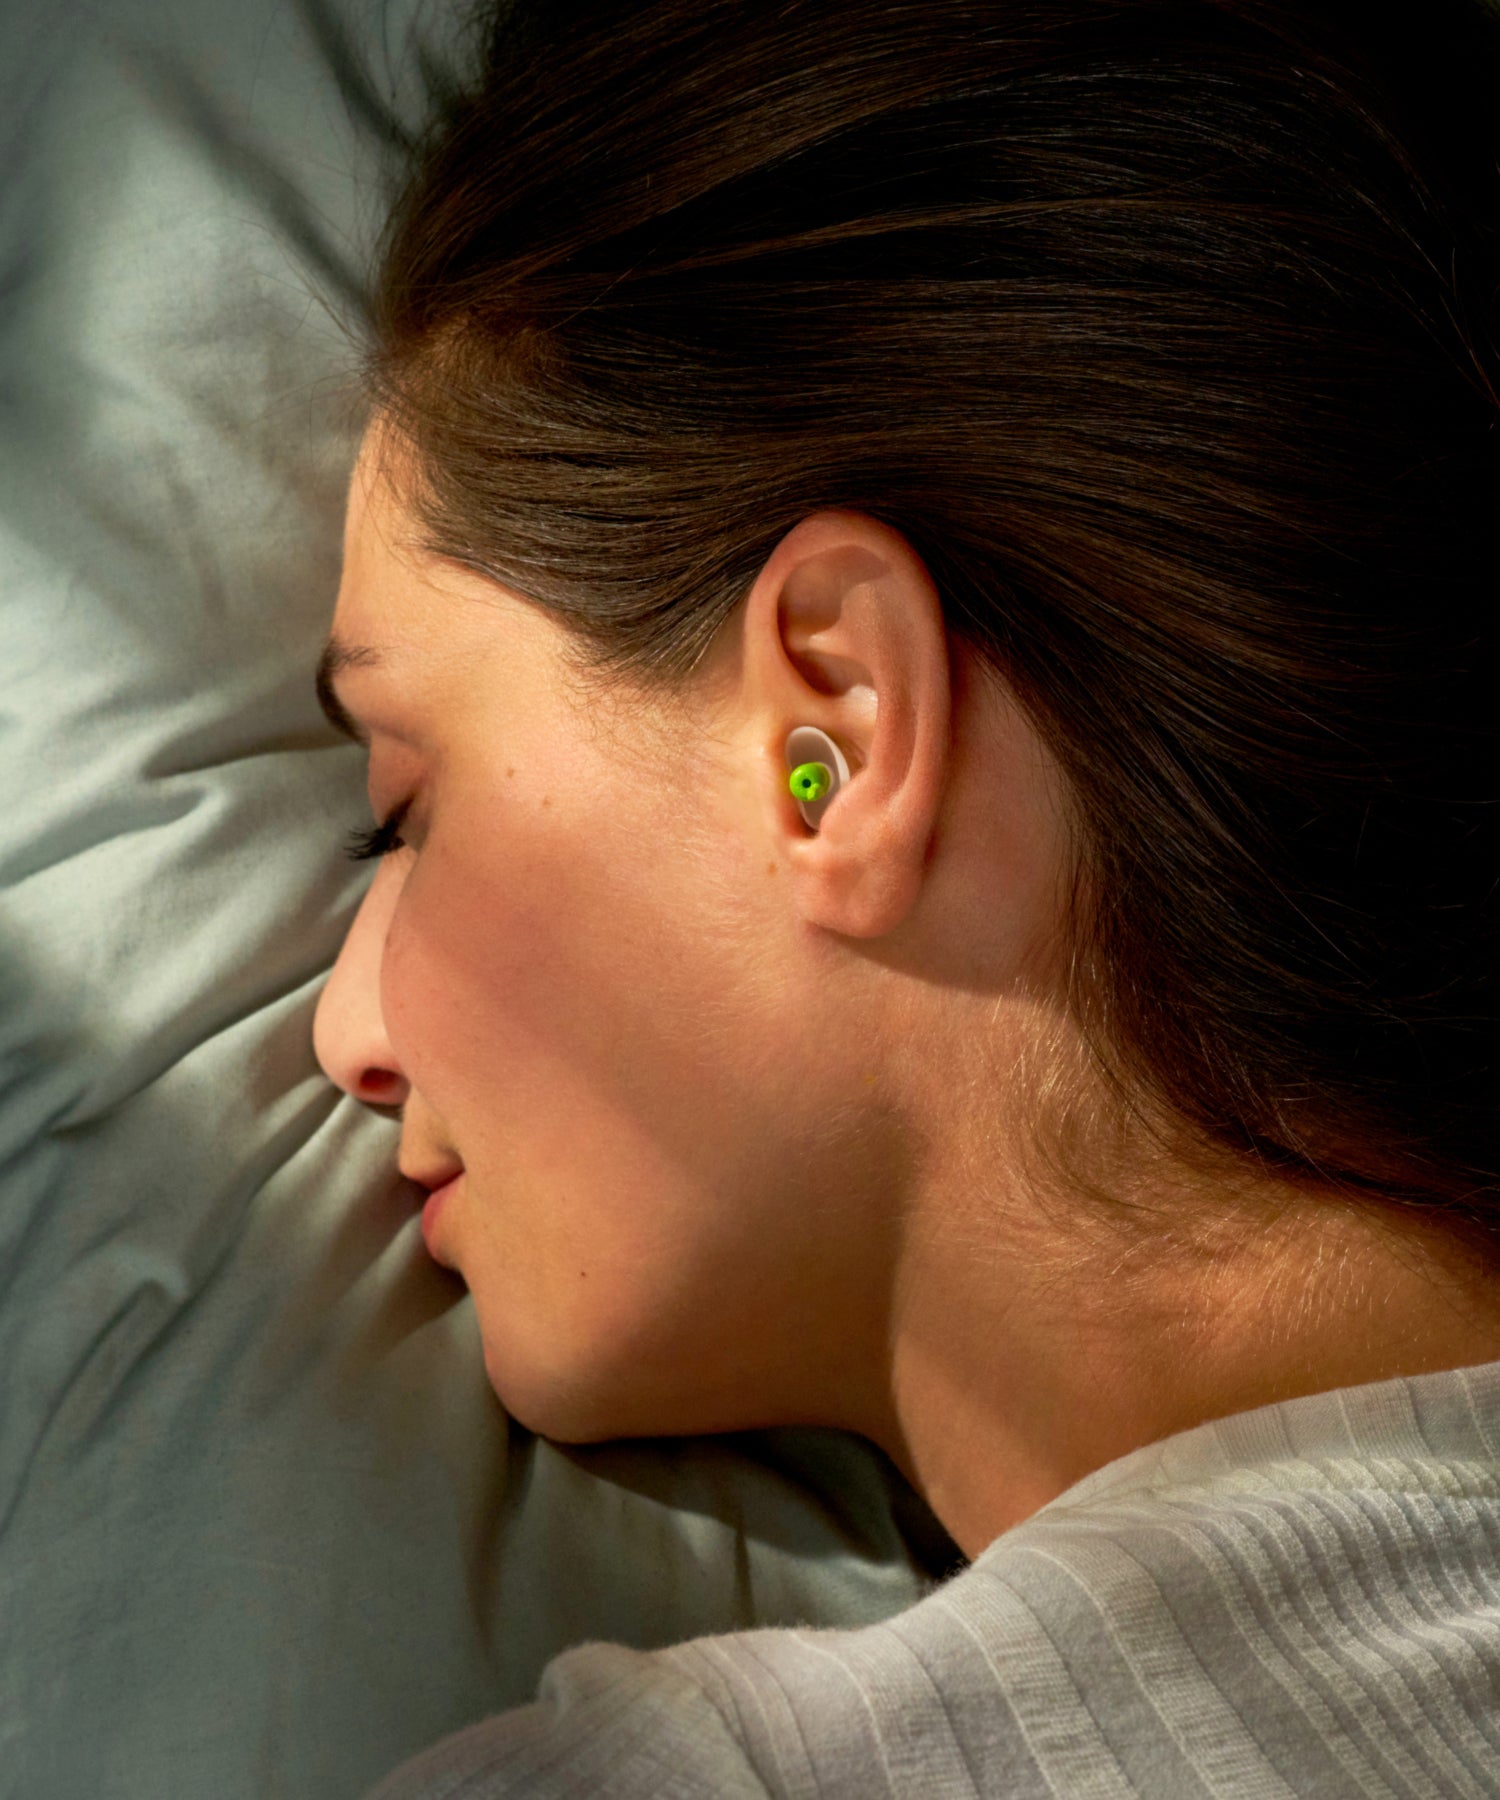 alpine sleepsoft sleep earplugs use